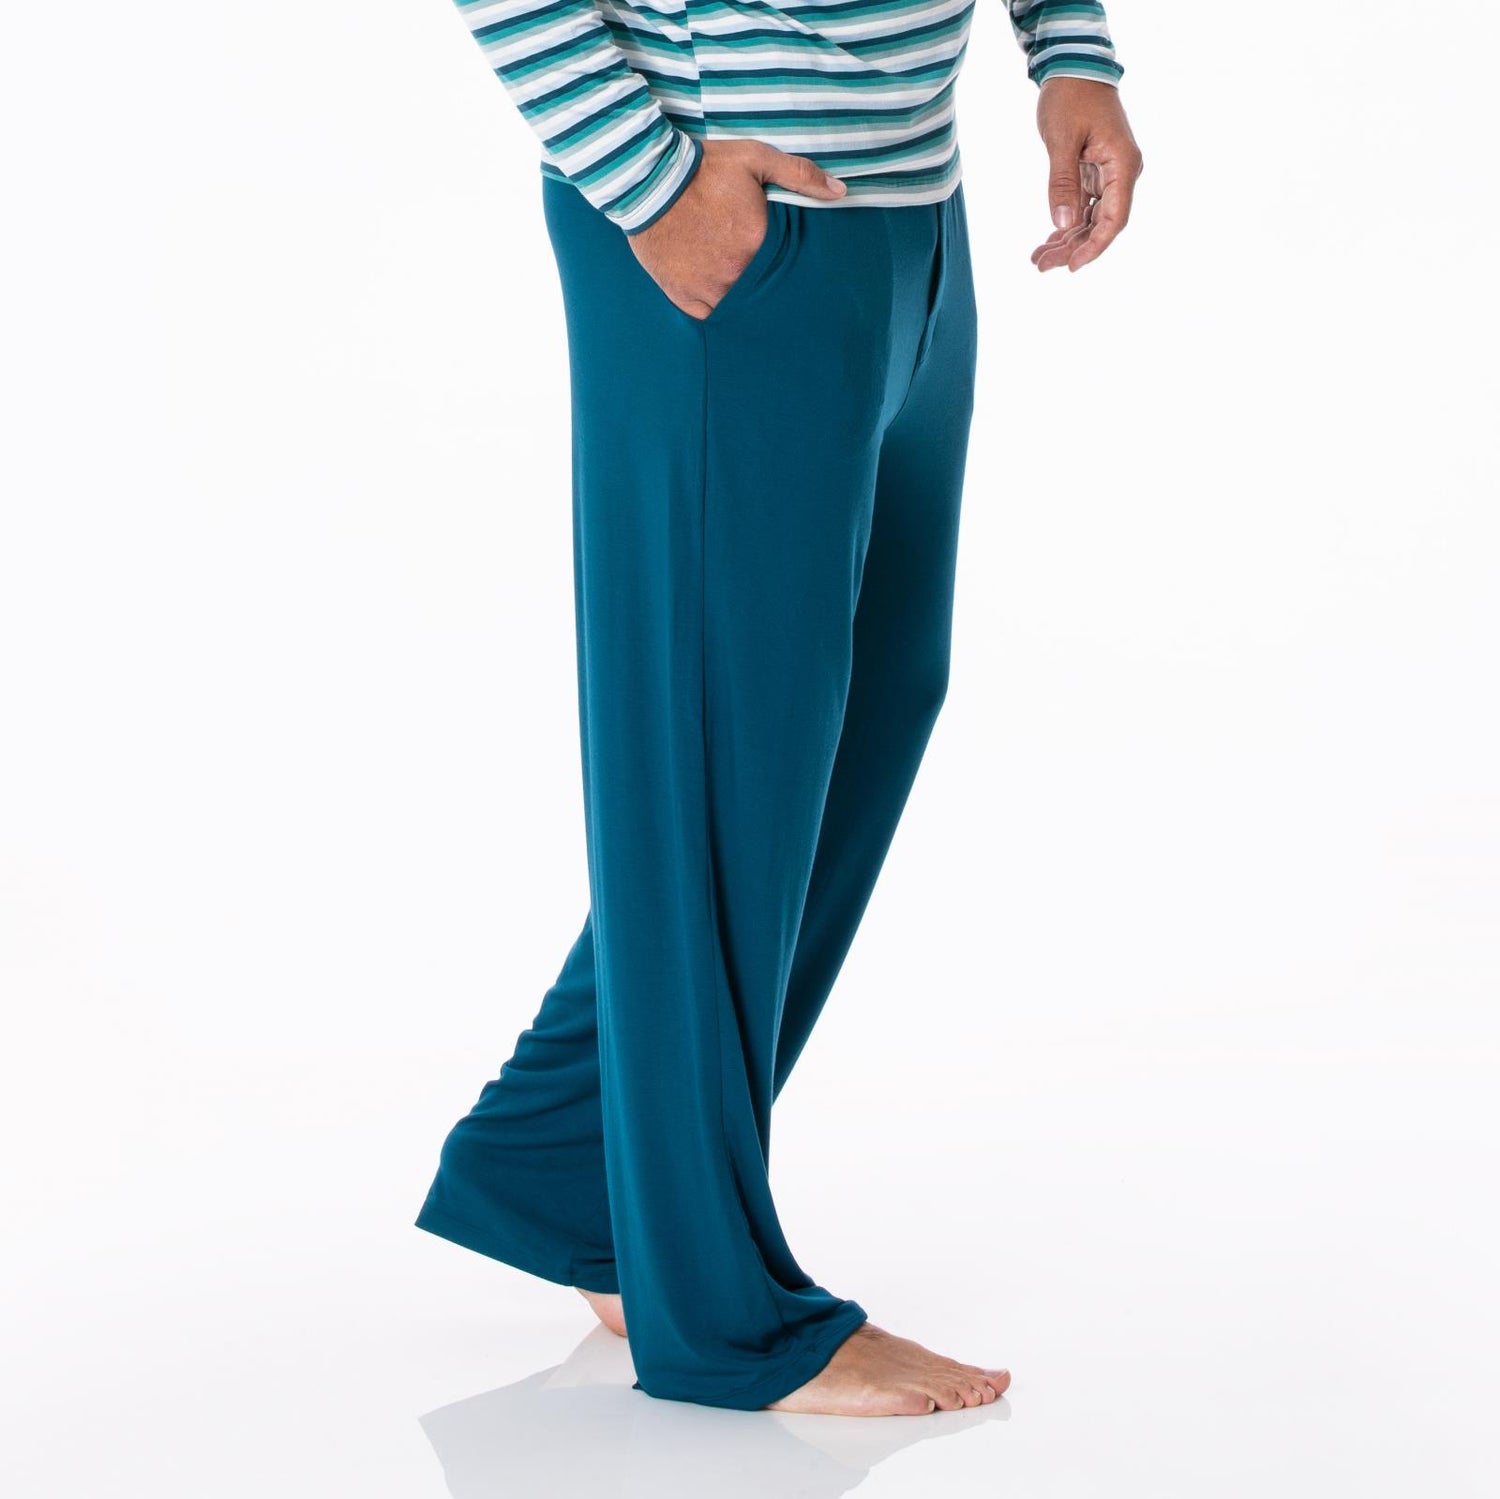 Men's Pajama Pants in Peacock